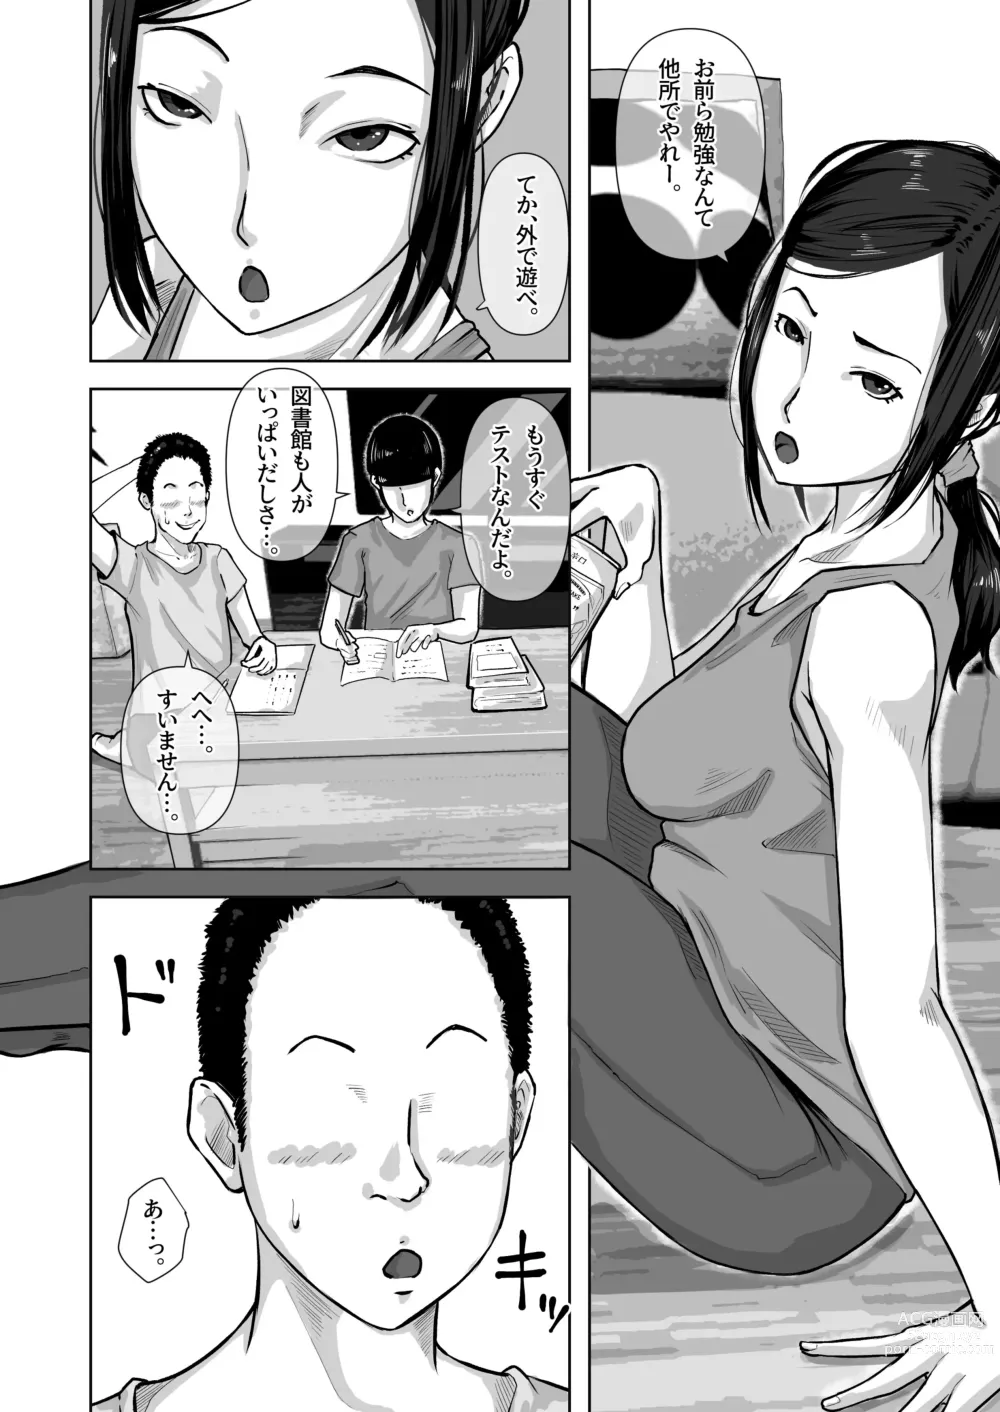 Page 5 of doujinshi Tomodachi no Okaa-san o Okazu ni Suru.